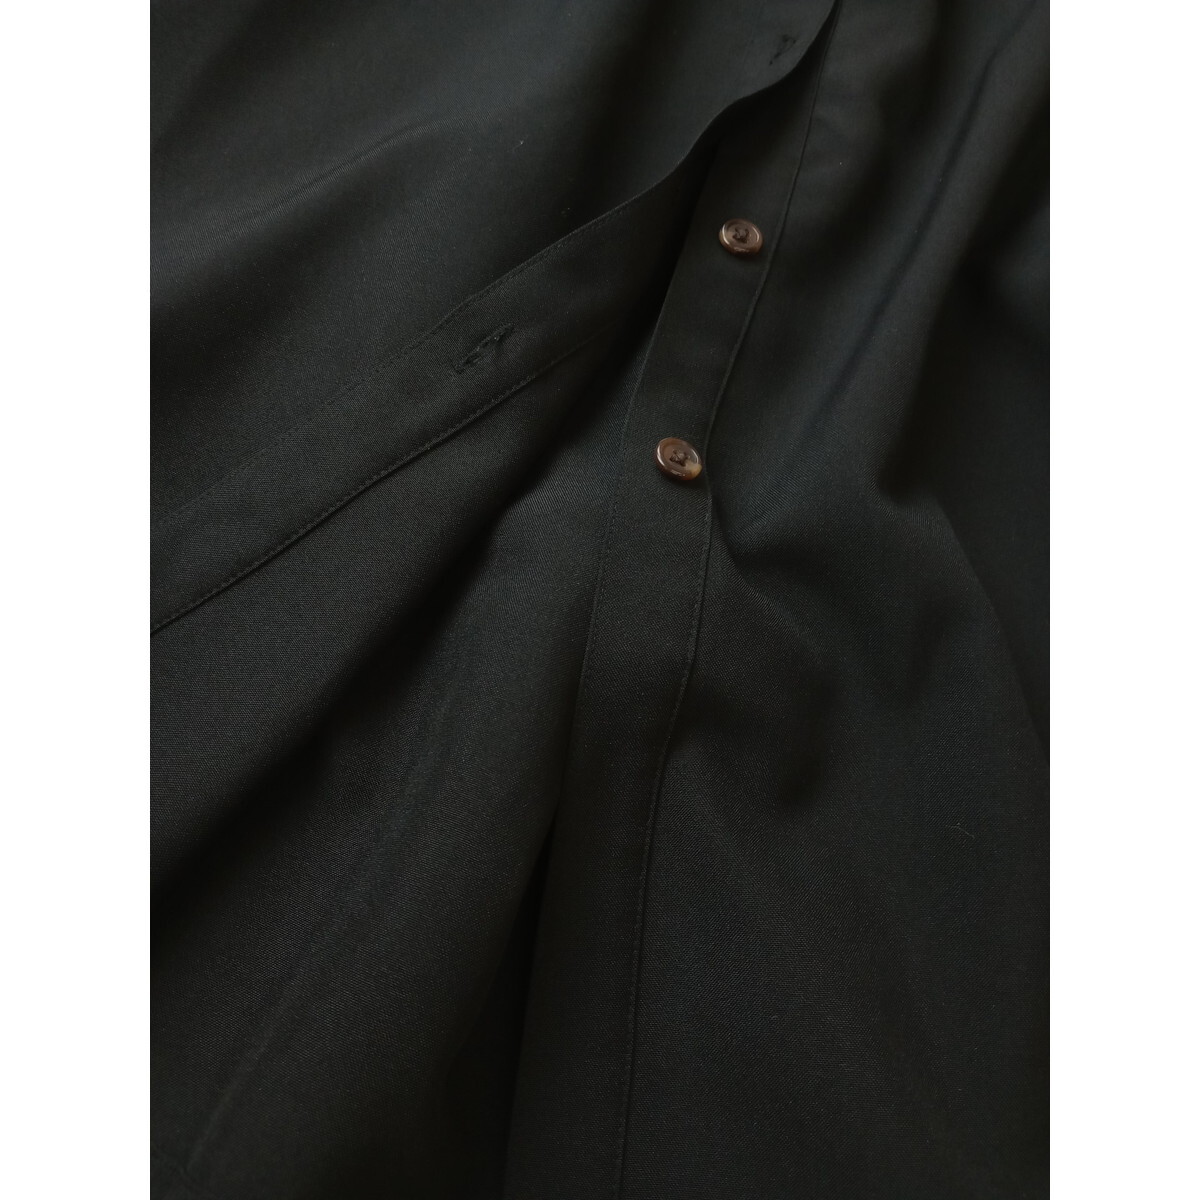 Discoat ディスコート「そう、黒ってやっぱり魅力的」レイヤード風 バンドカラー ロング シャツ ワンピース 黒 ブラック (57K+6088)_画像3